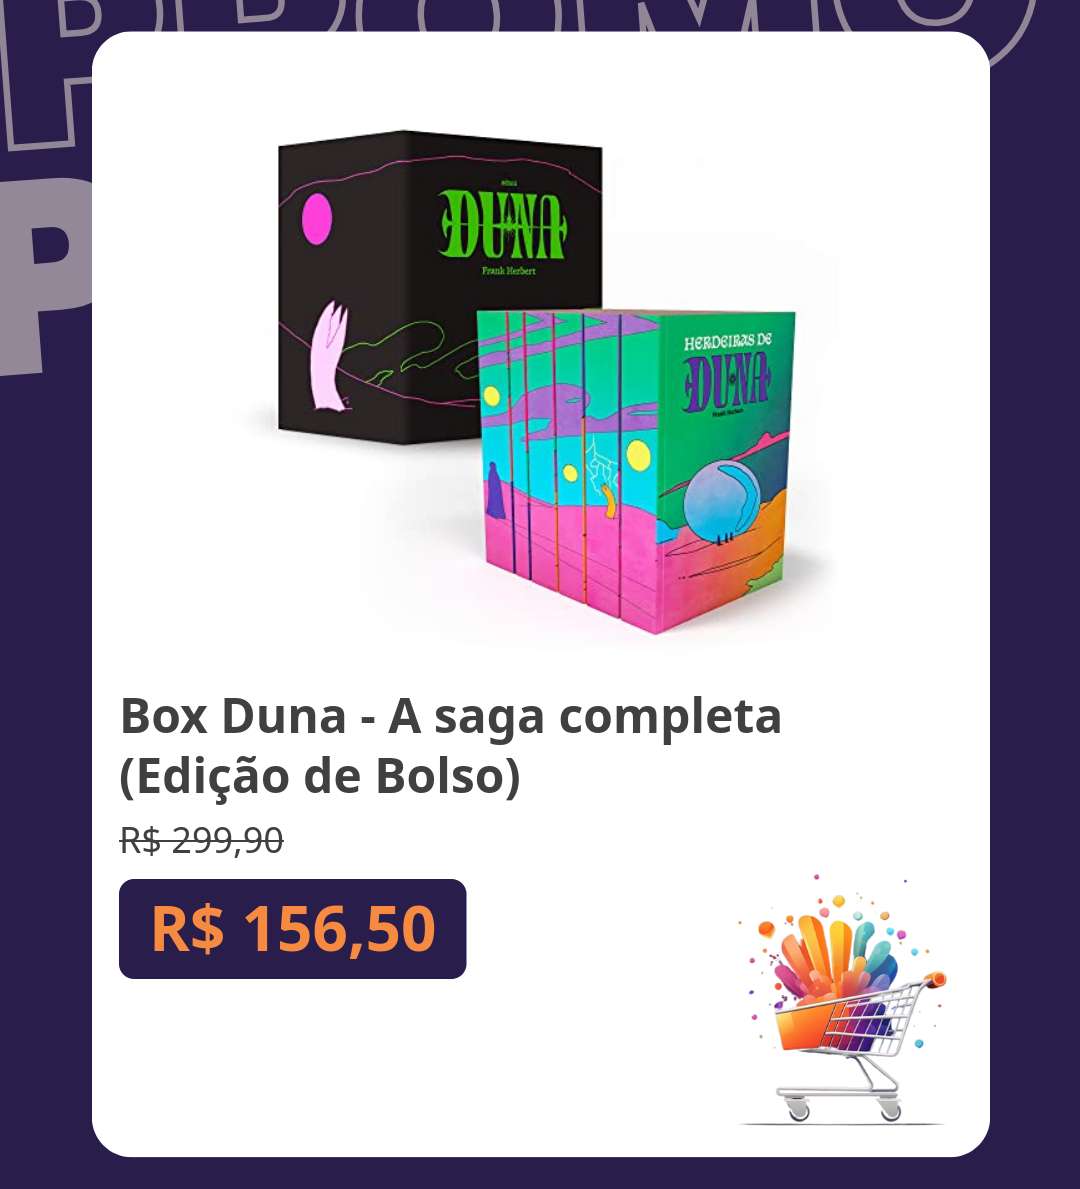 📚 Box Duna - A saga completa (Edição de Bolso)
De R$ 299,90 por R$ 156,50

amzn.to/44I8Lop